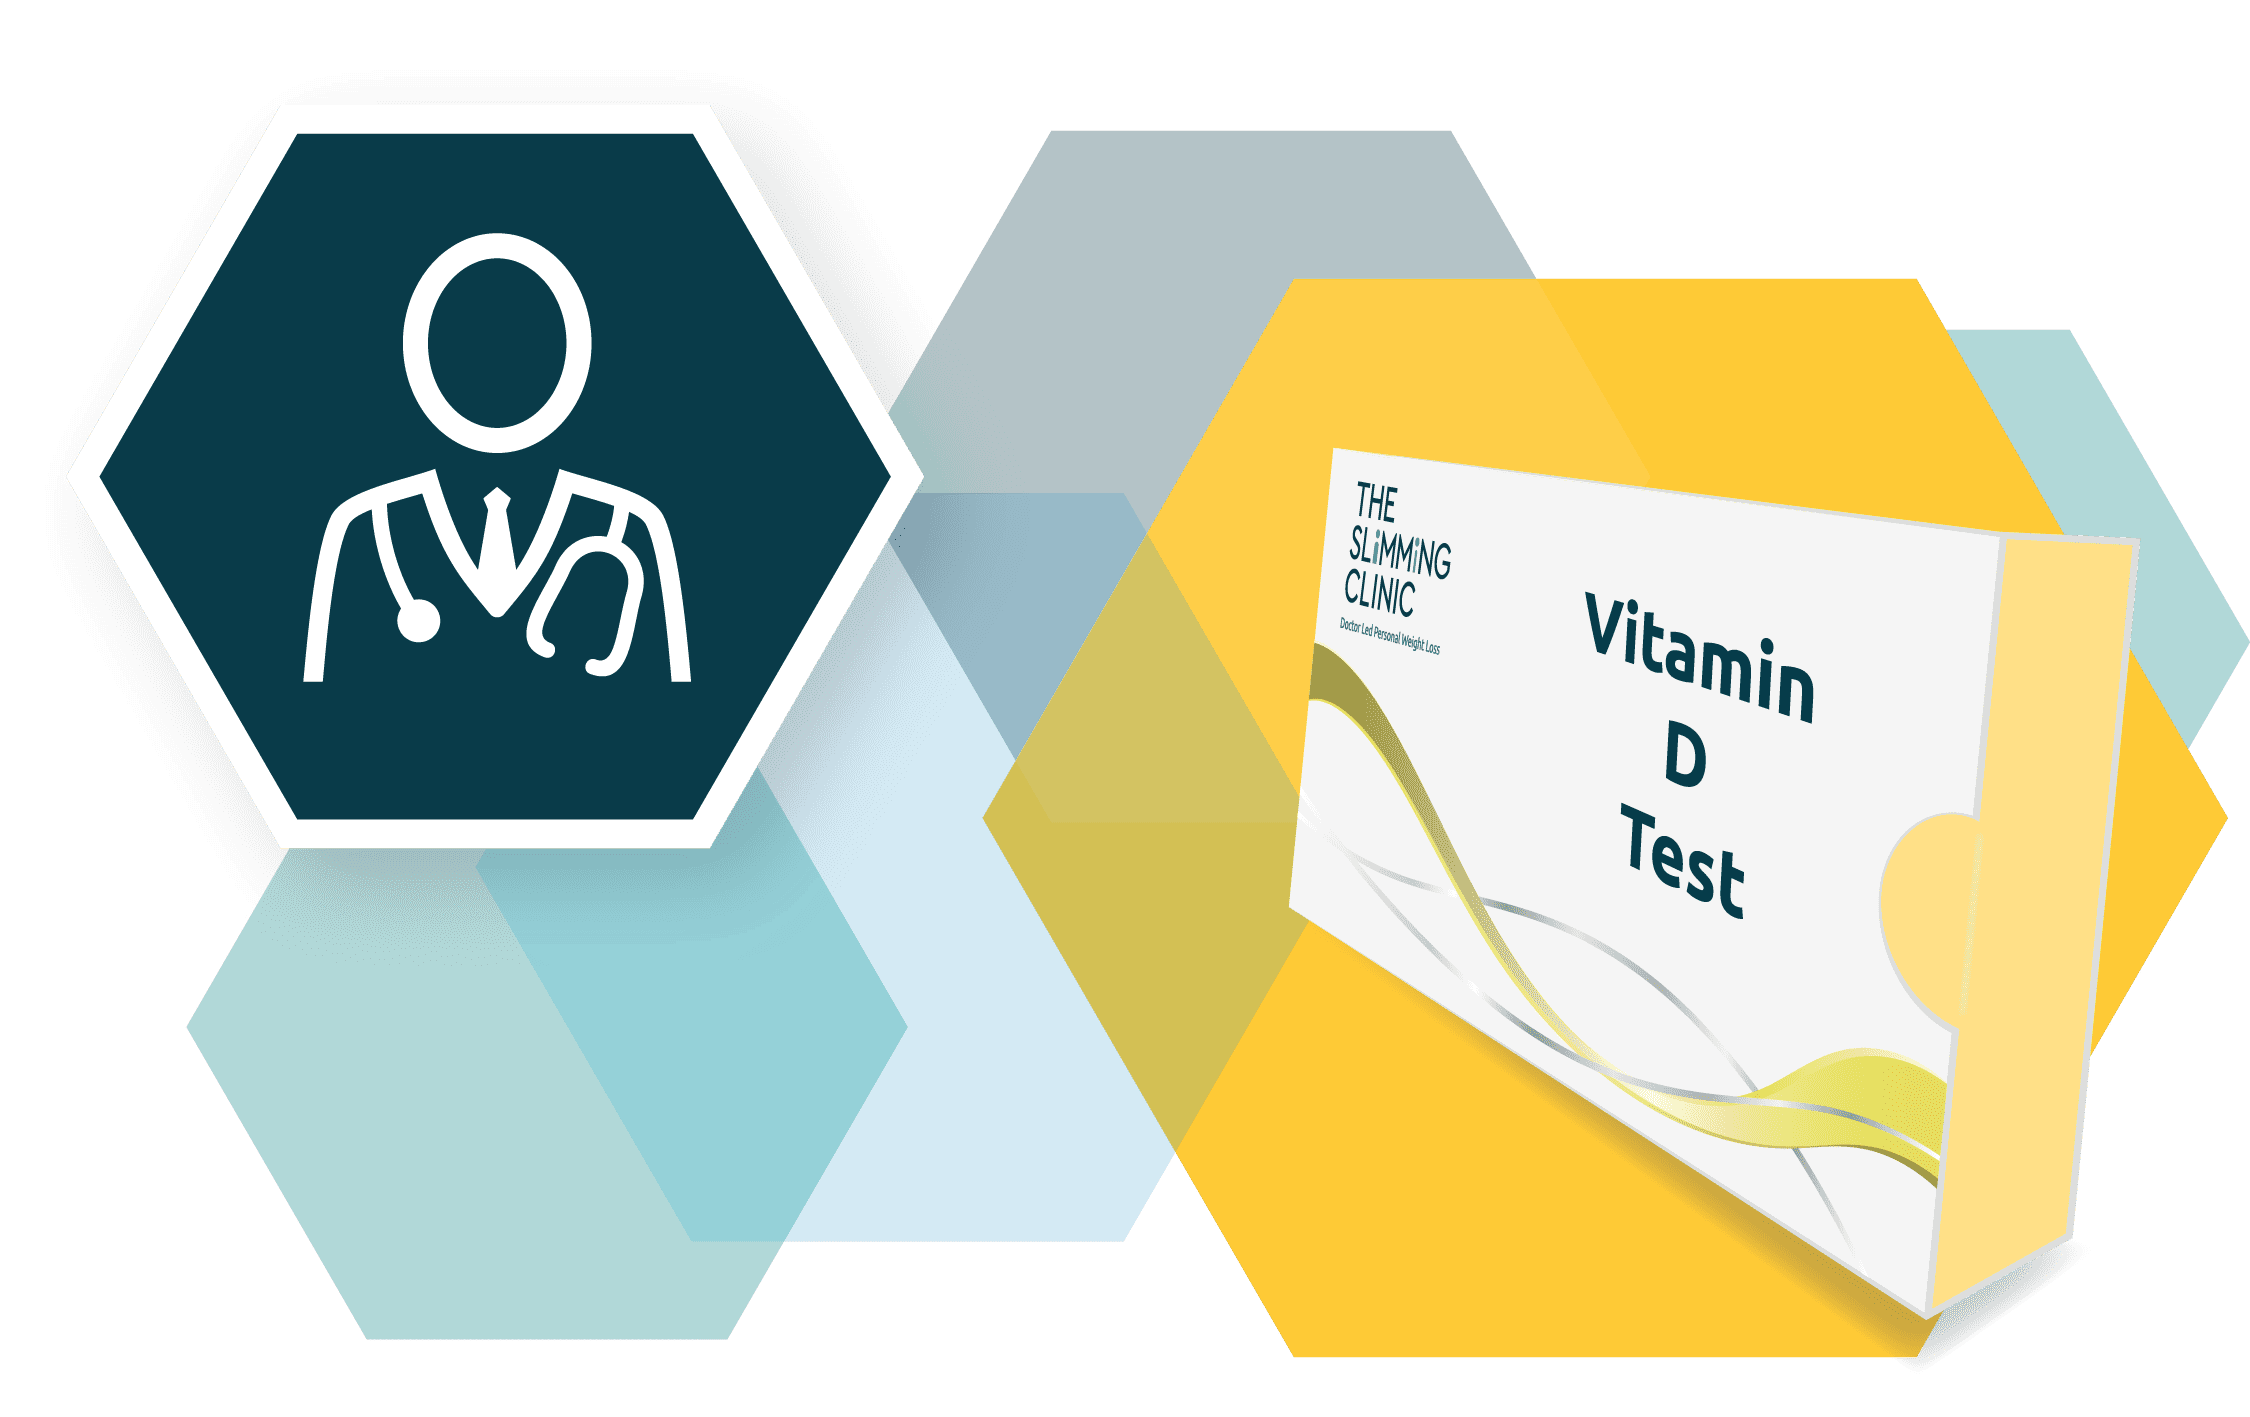 Vitamin D Test